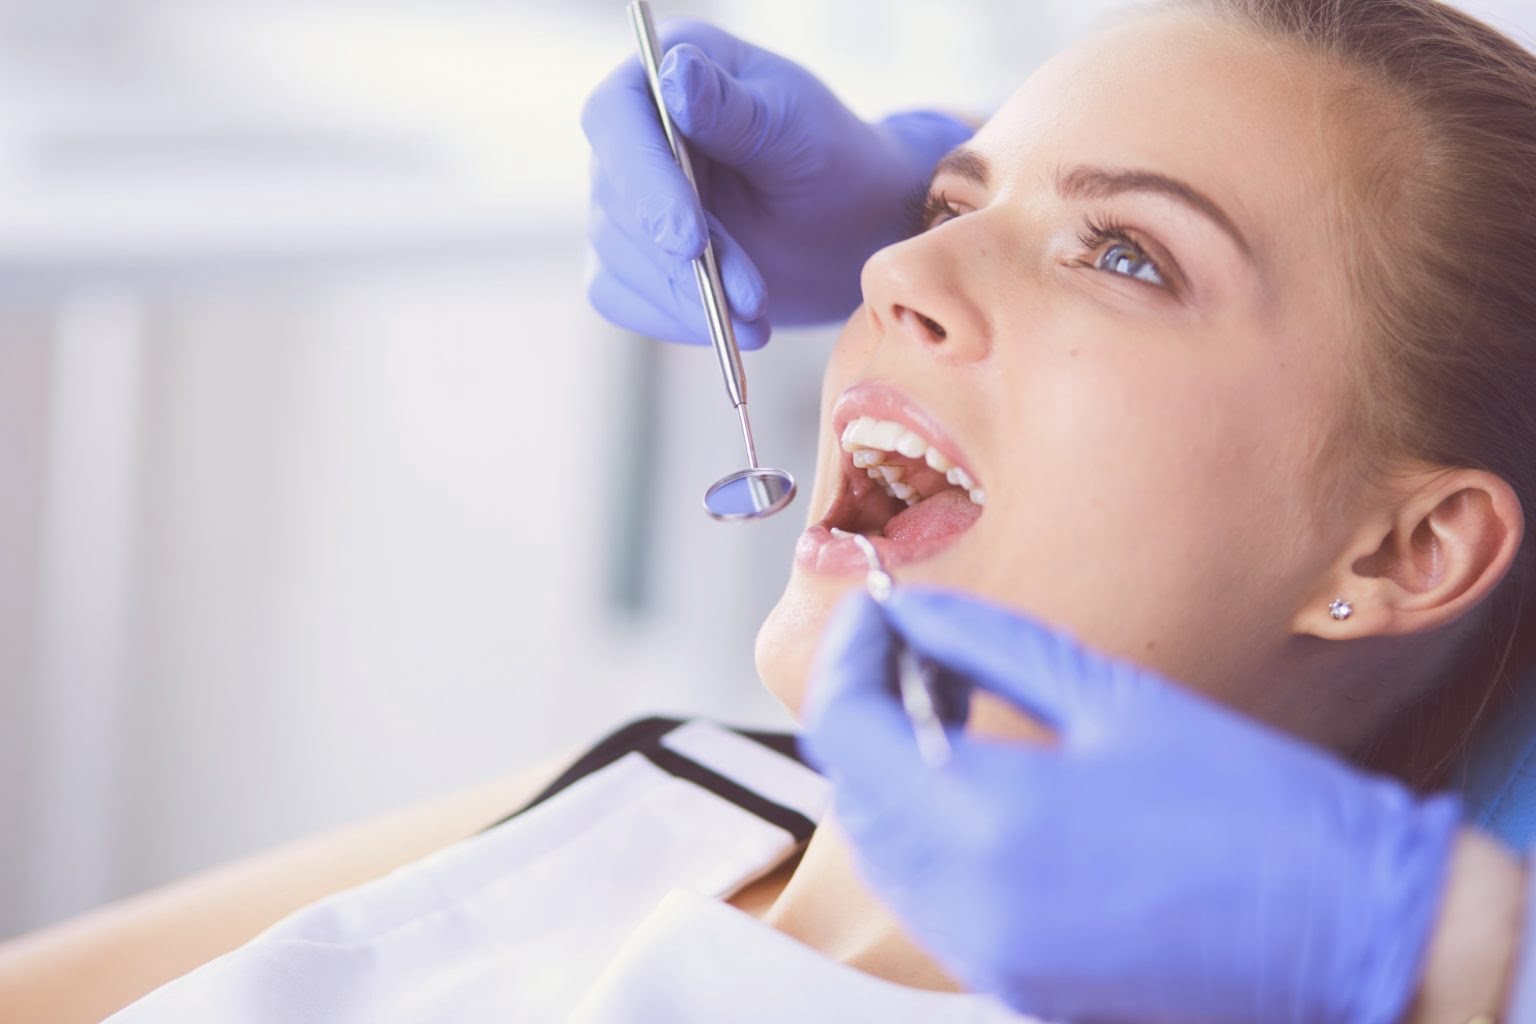 Effektive und zuverlässige Behandlung zur Zahnaufhellung: Bleaching